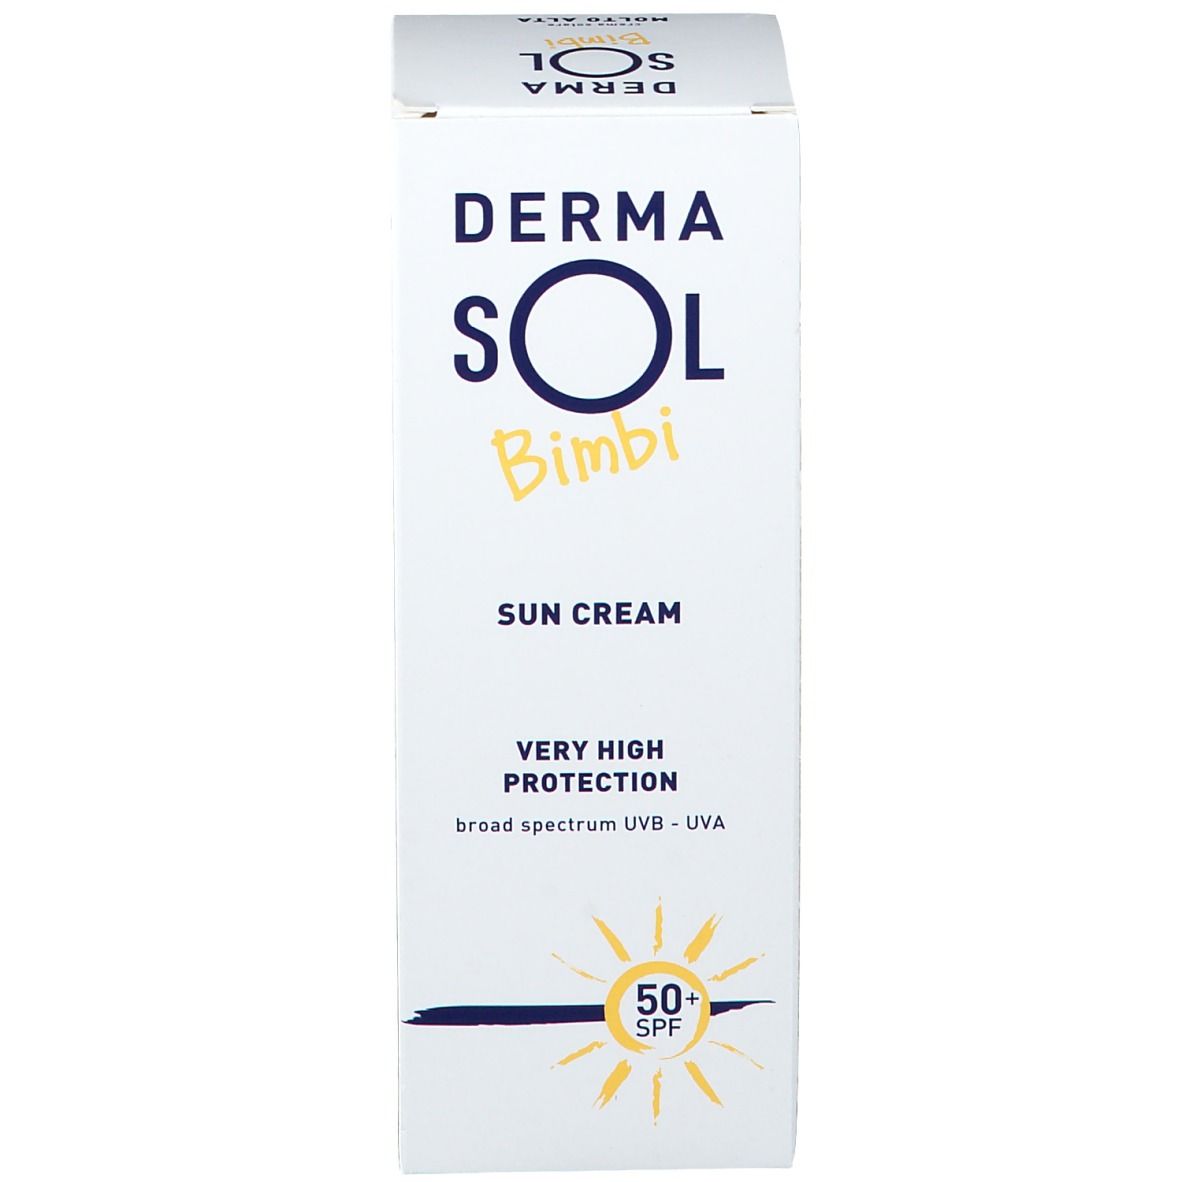 Dermasol Bimbi Crema Solare Protezione Molto Alta SPF 50+